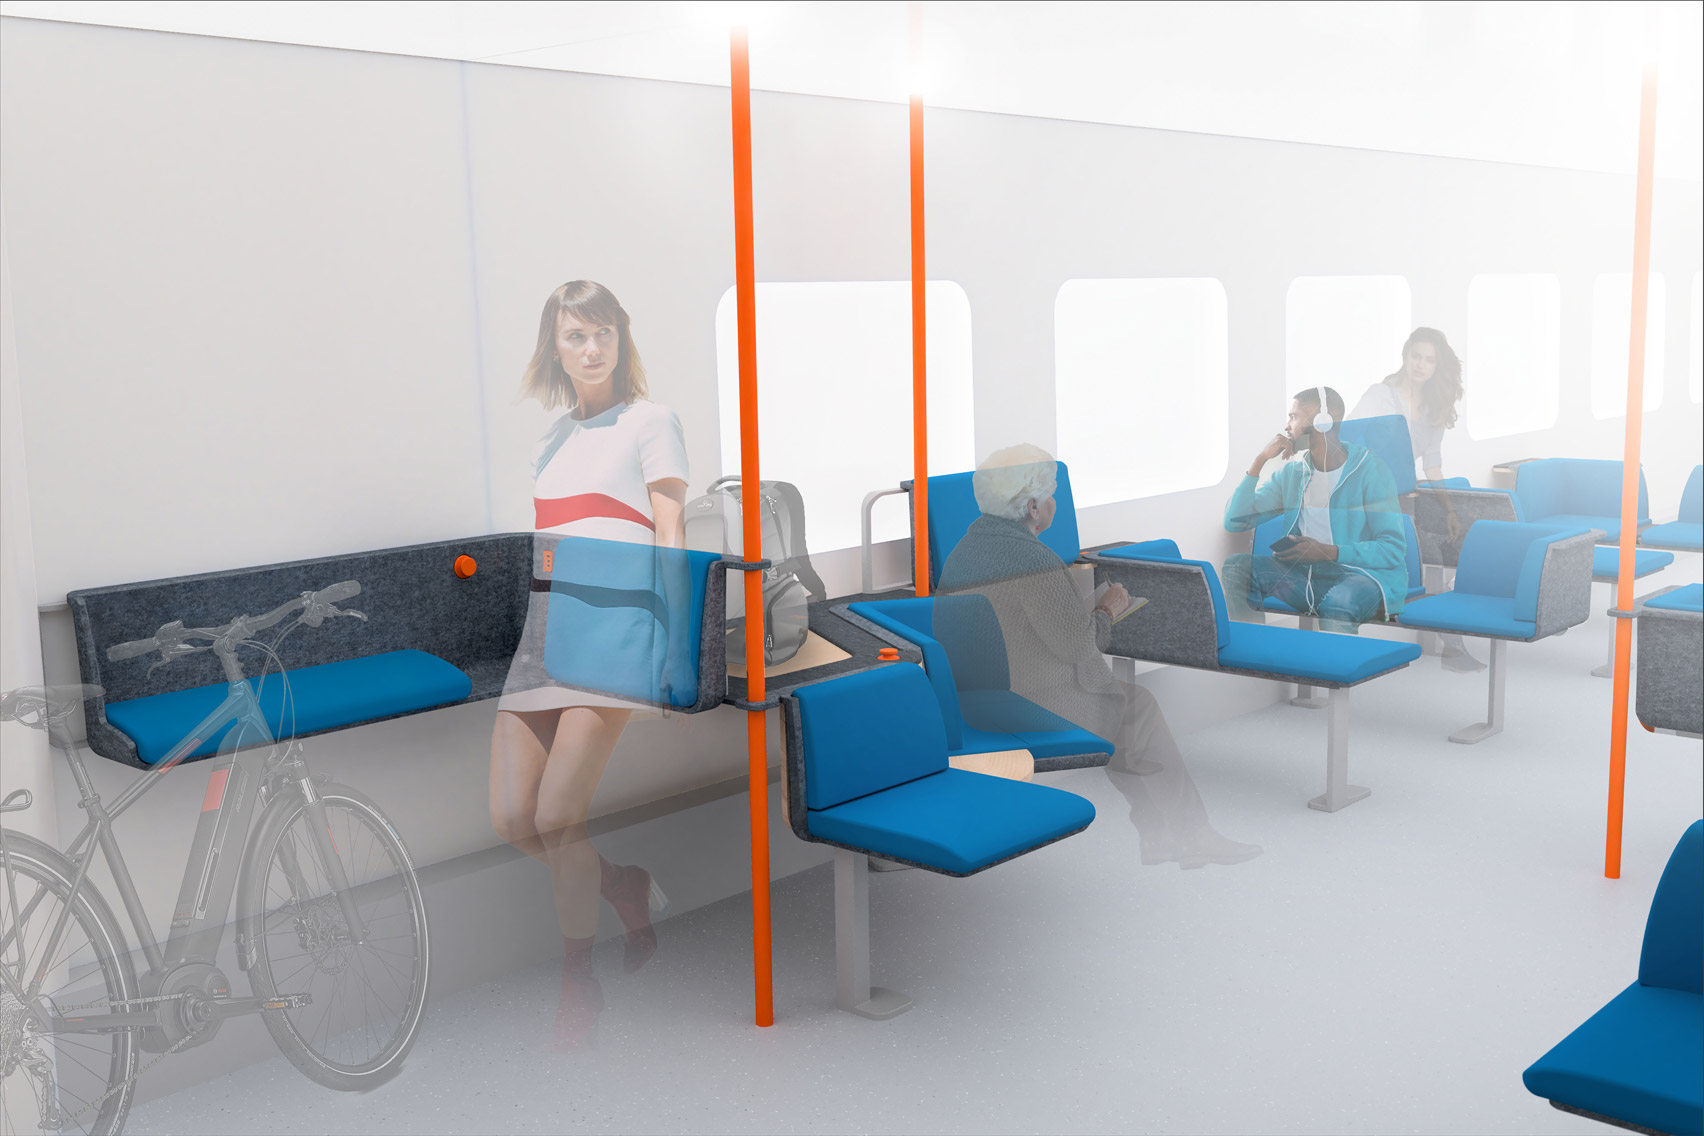 Modular Commuter Seats by Clemens Beyerlein